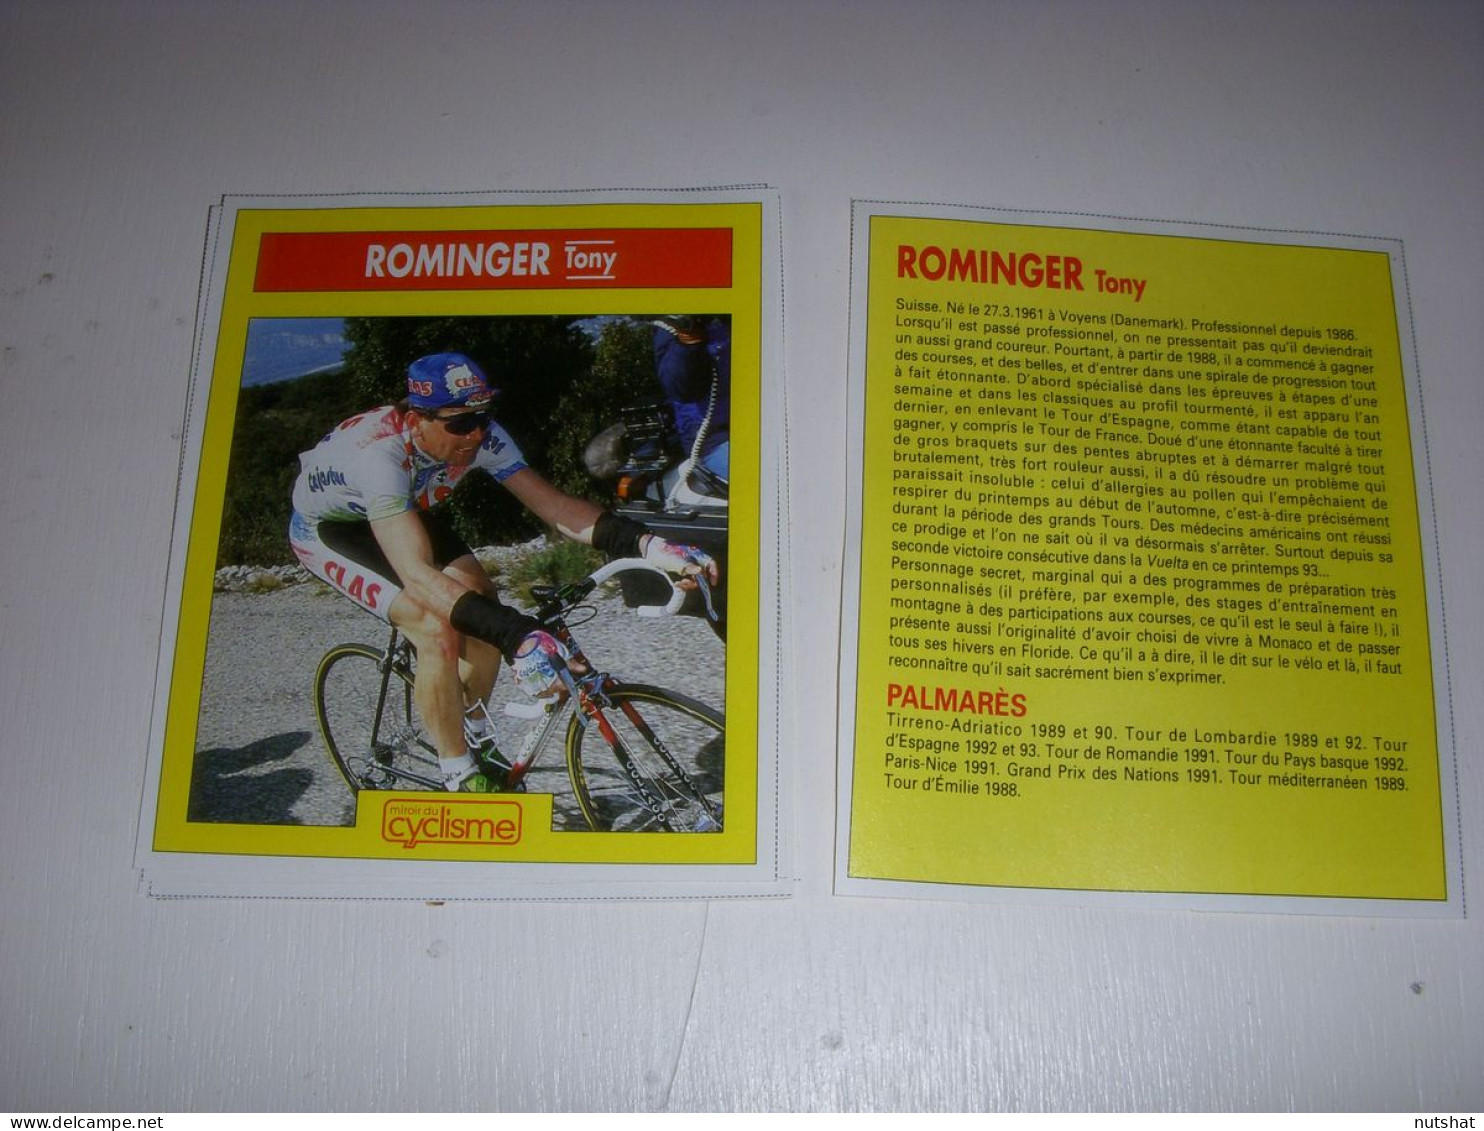 CYCLISME COUPURE 12x10 MIROIR Du CYCLISME Tony ROMINGER CLAS HISTOIRE PALMARES - Cyclisme